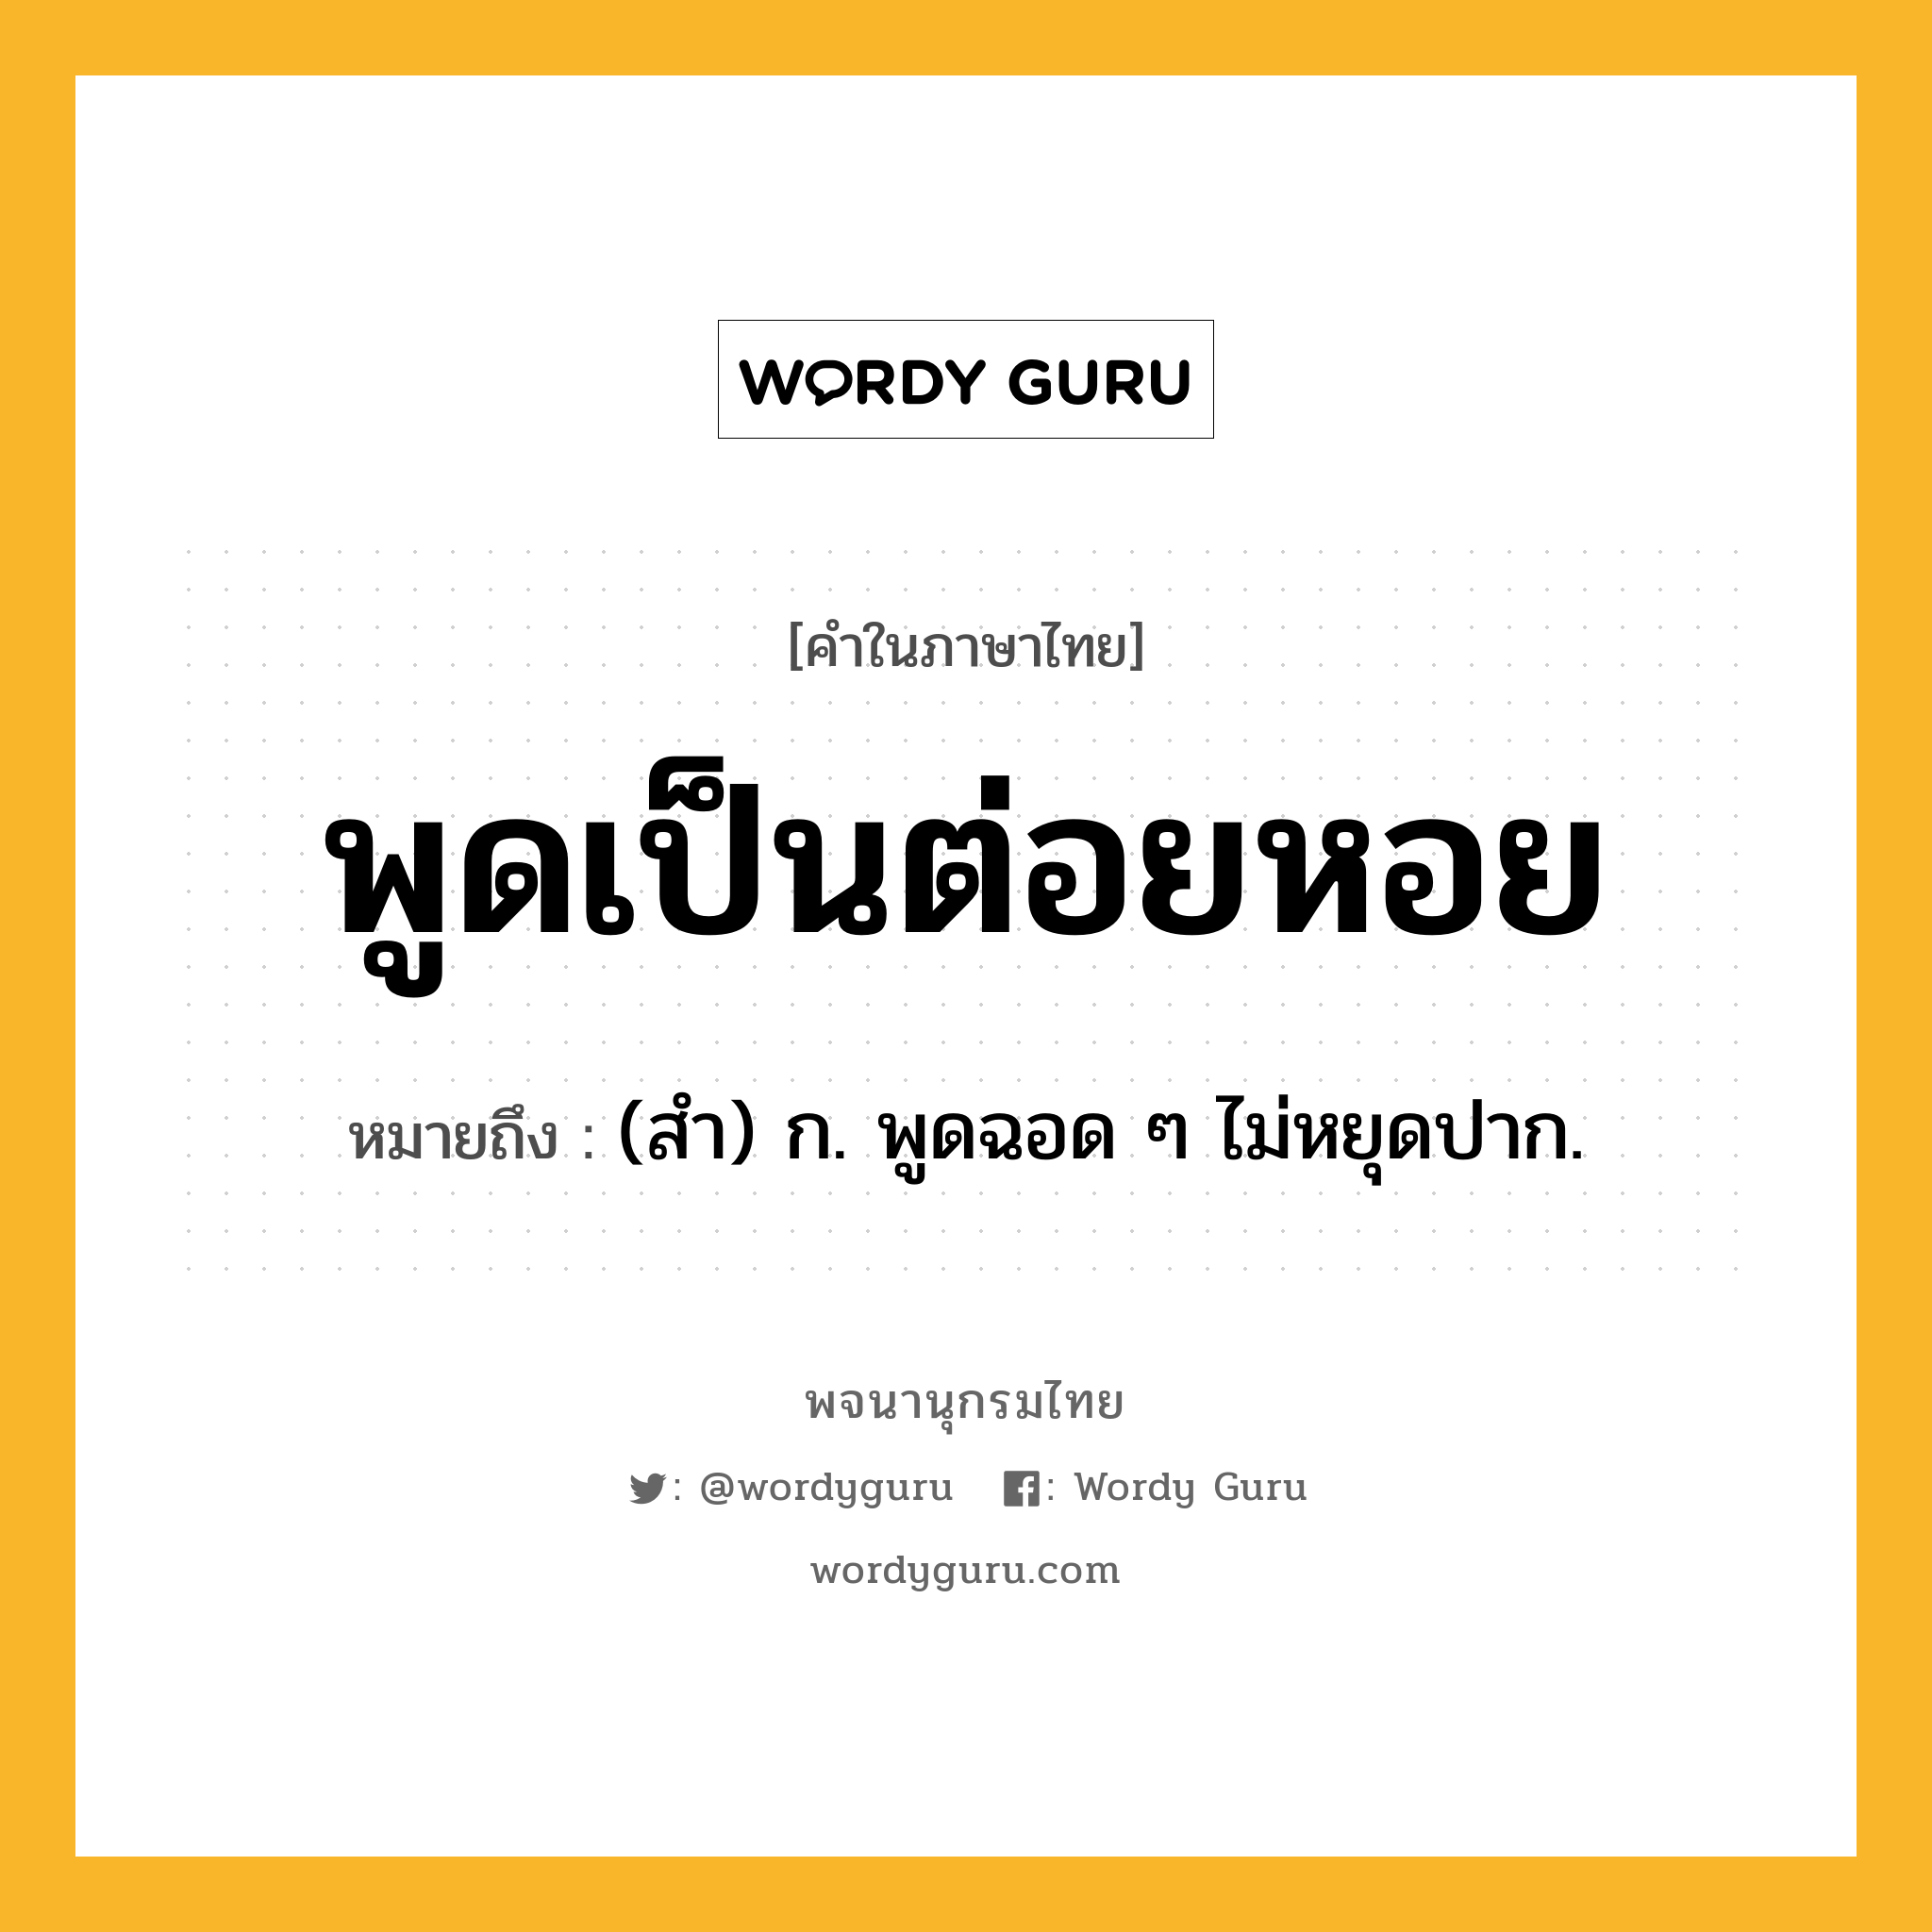 พูดเป็นต่อยหอย ความหมาย หมายถึงอะไร?, คำในภาษาไทย พูดเป็นต่อยหอย หมายถึง (สํา) ก. พูดฉอด ๆ ไม่หยุดปาก.